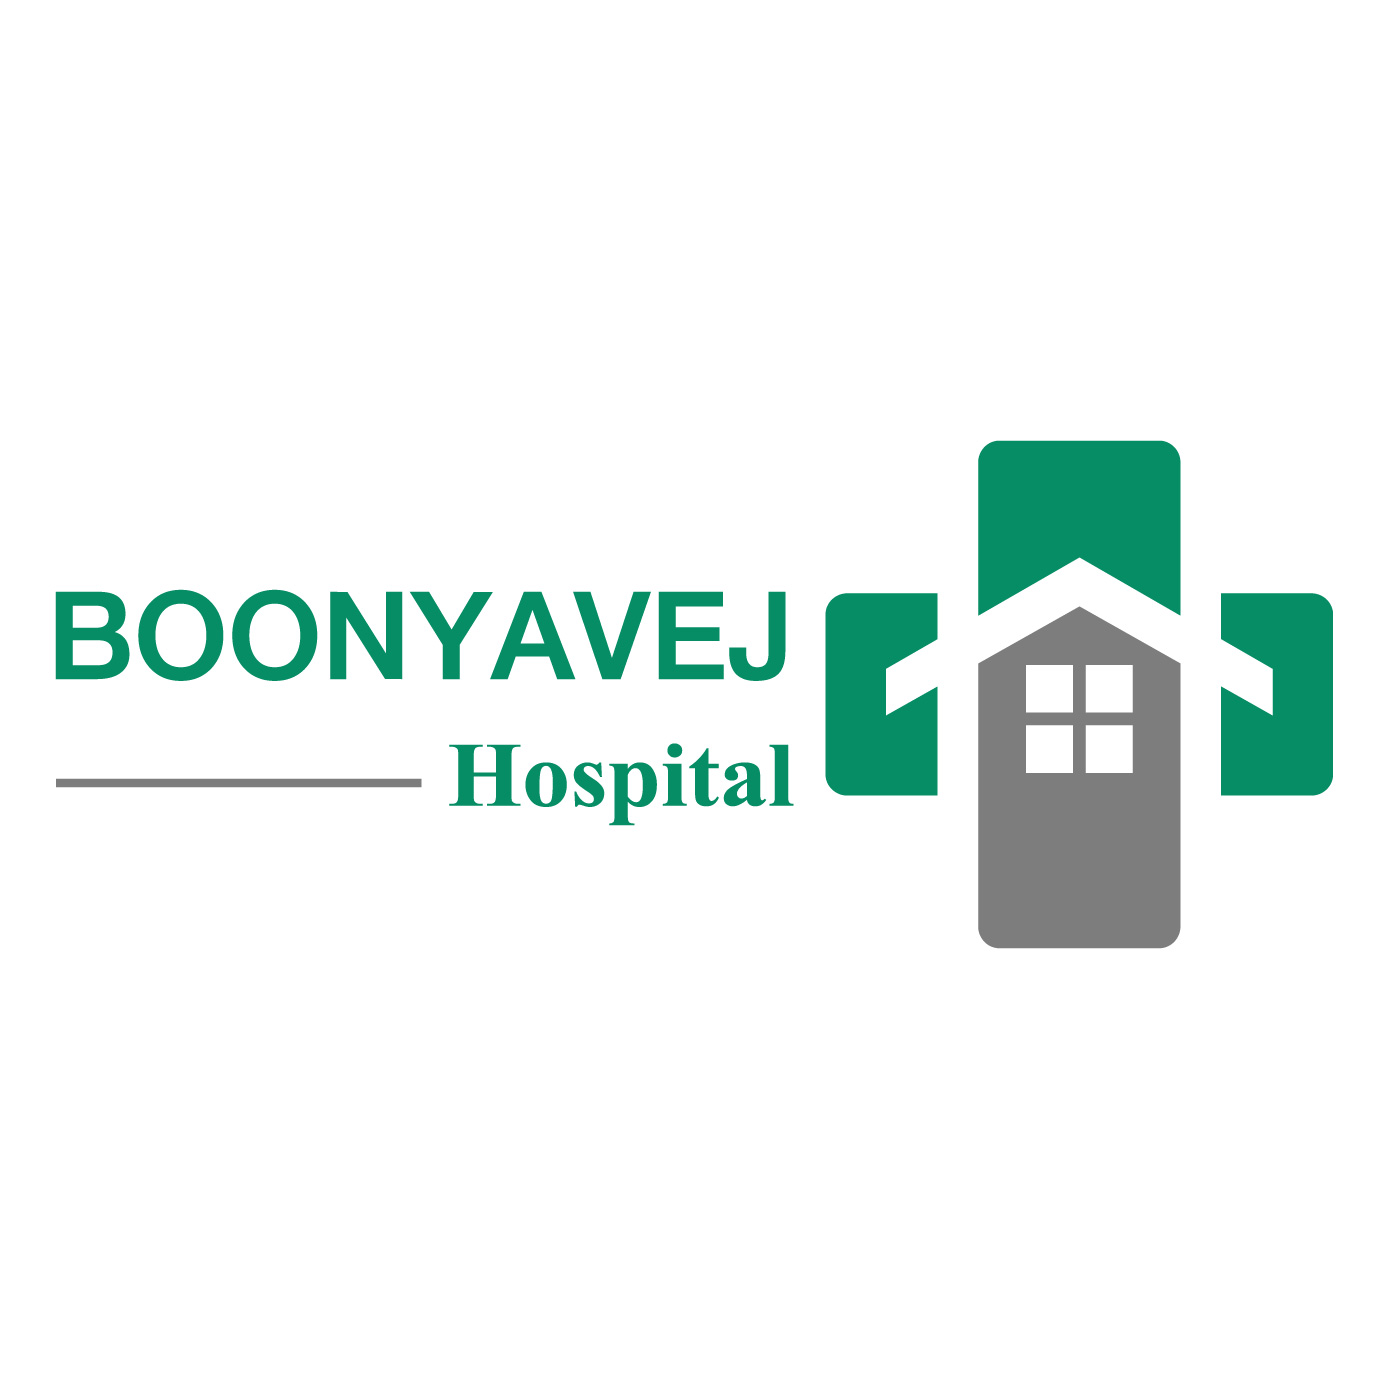 Boonyavej Hospital 01